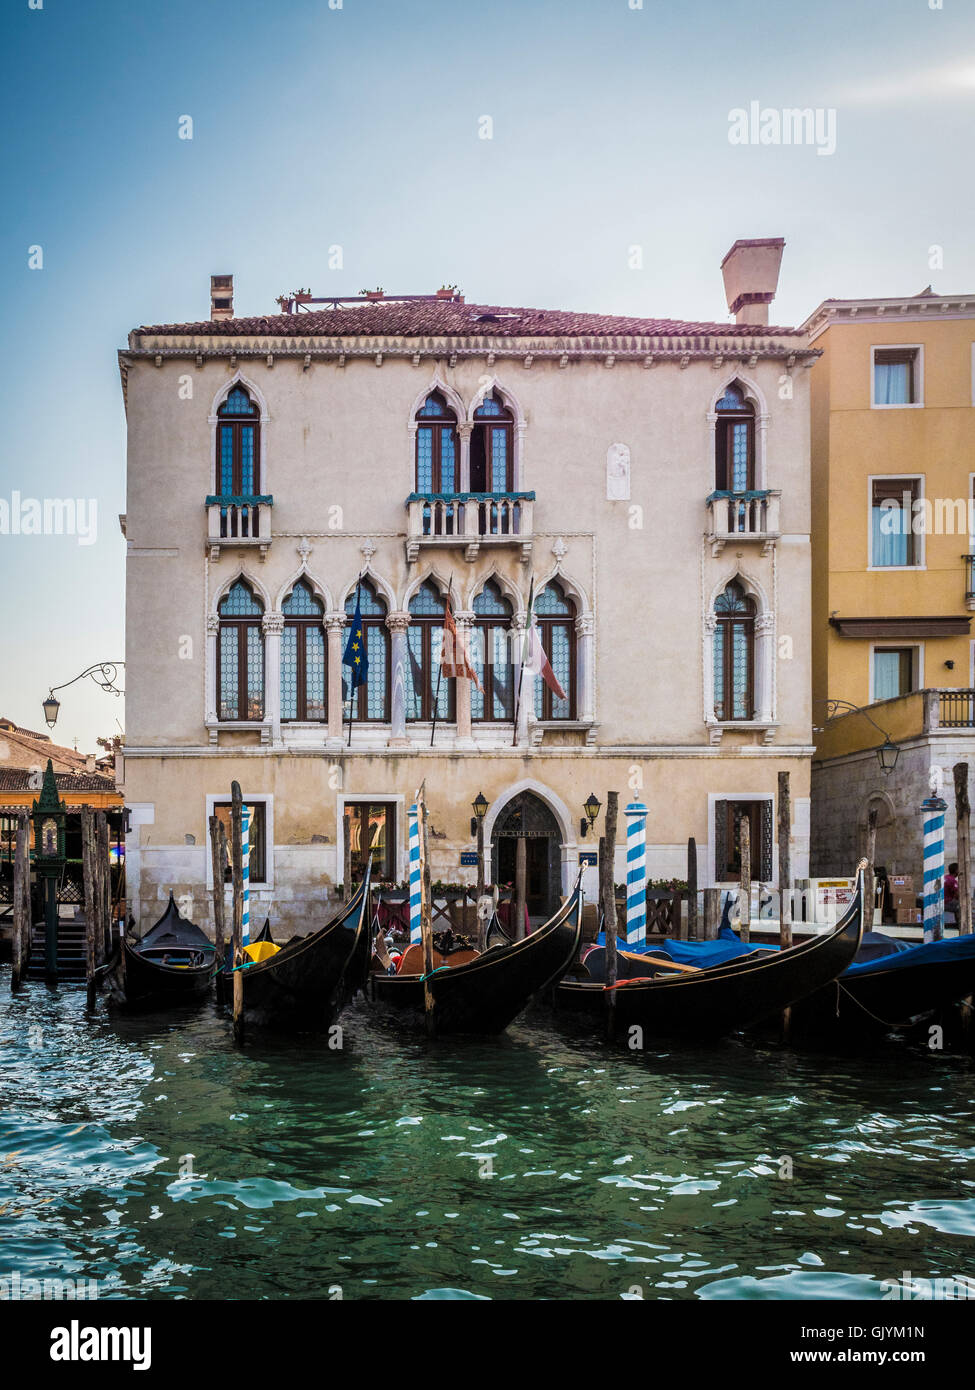 Festgemachten Gondeln vor einem traditionellen venezianischen Gebäude. Venedig, Italien. Stockfoto